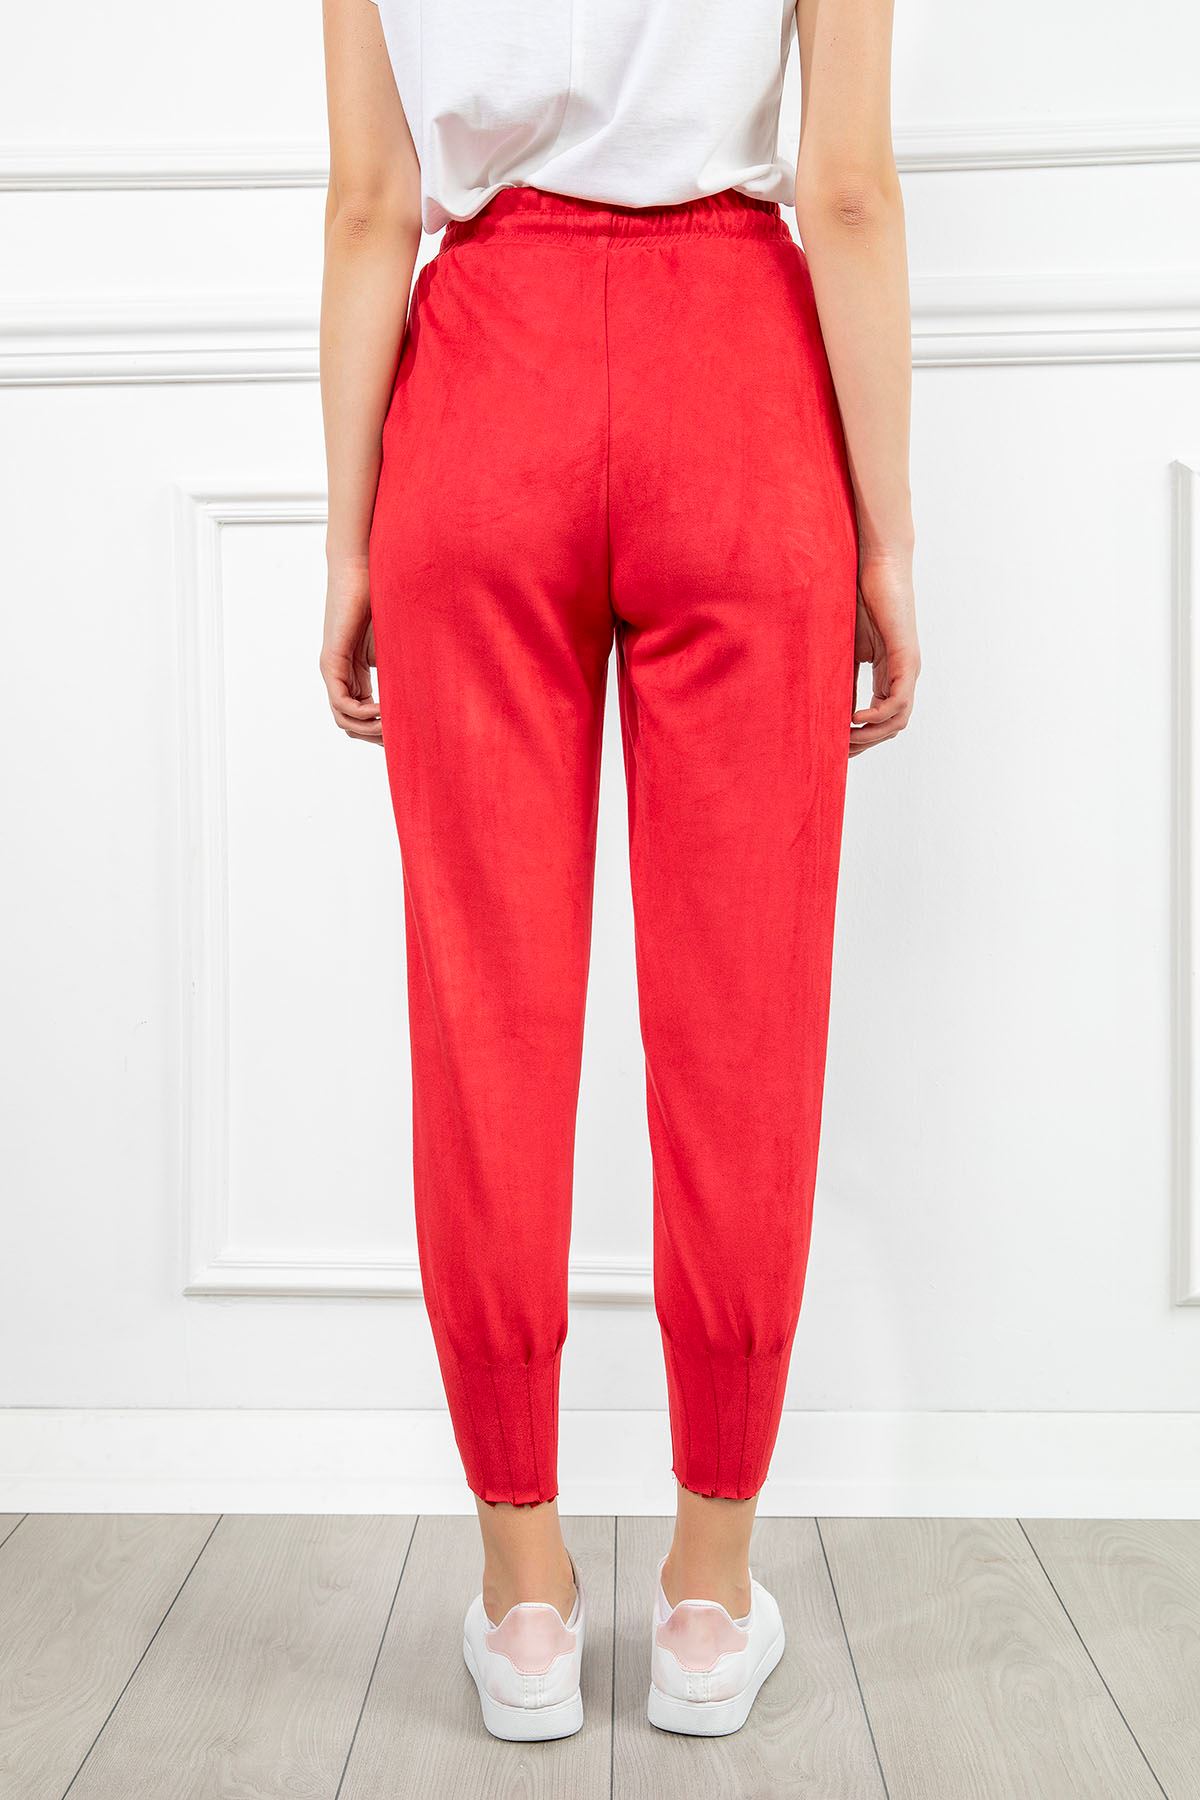 Süet Kumaş Dar Kalıp Paçası Pileli Kadın Pantolon-Kırmızı